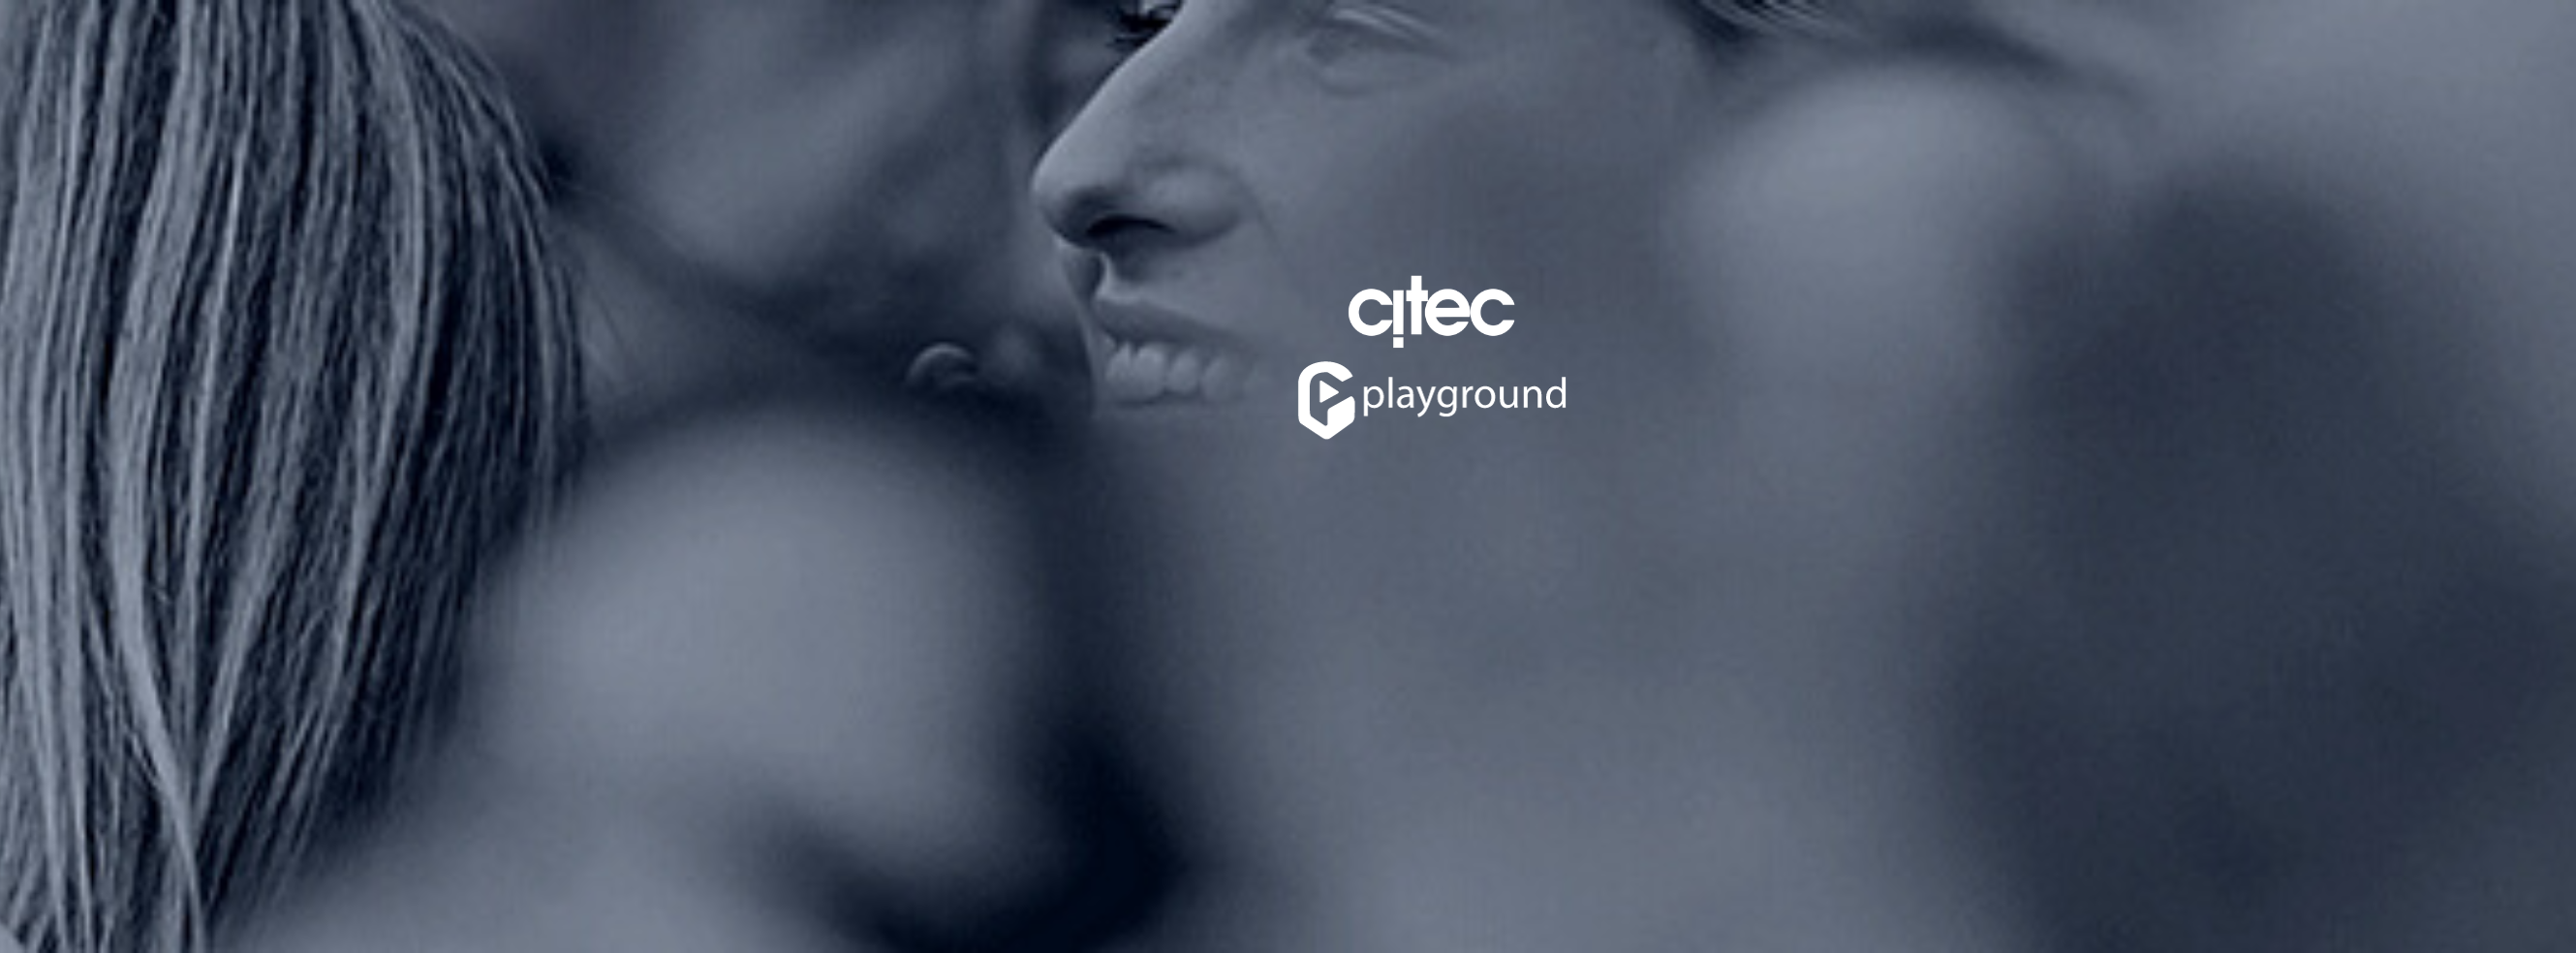 Retrouvez en vidéo notre nouveau partenaire : Citec !